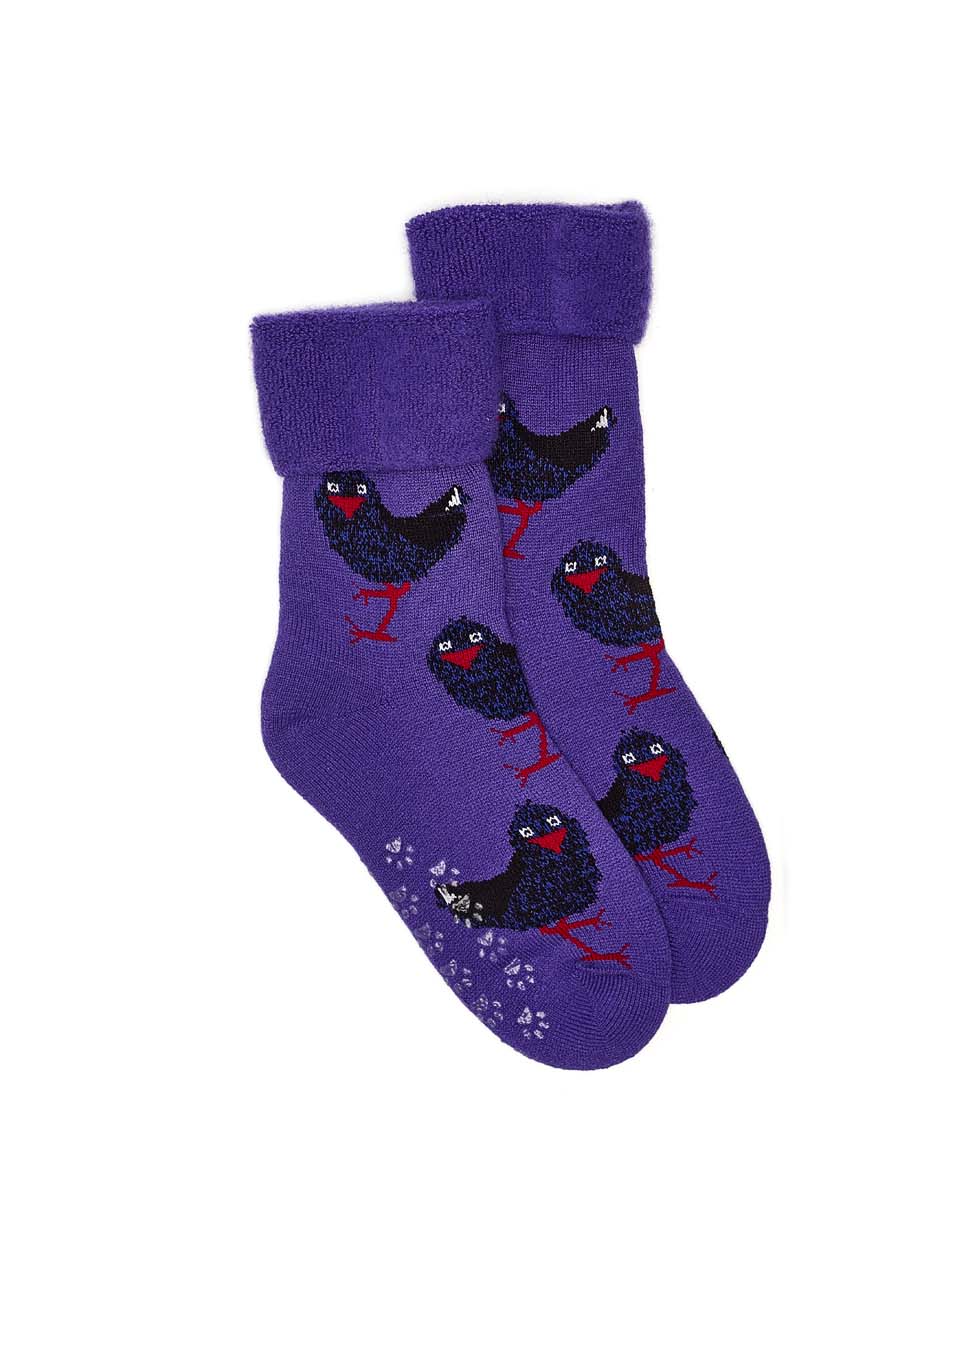 Pukeko Bed Socks - Purple